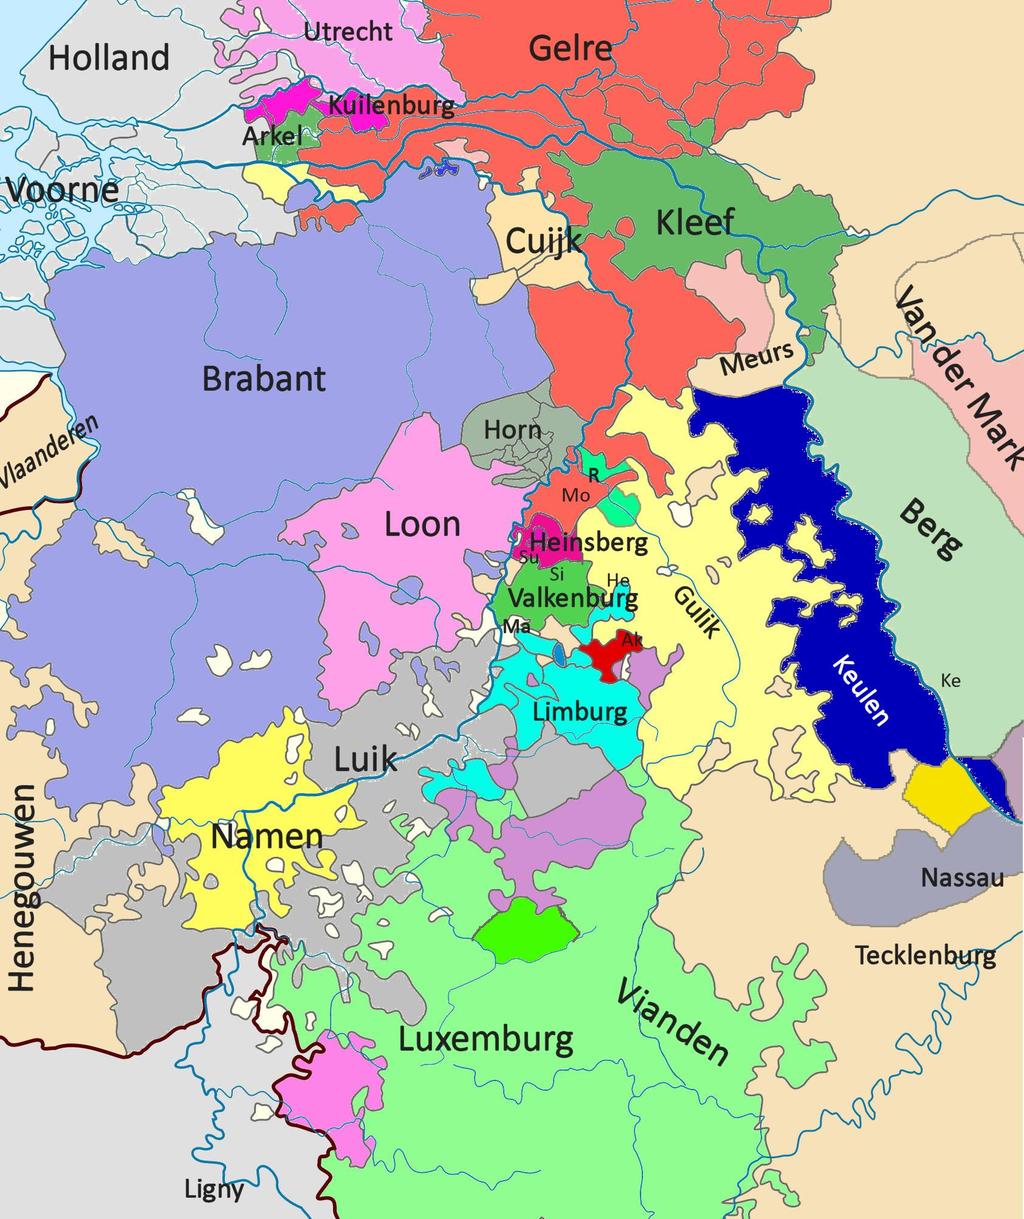 Kaart van de regio met alle betrokkenen van de Limburgse Successieoorlog.